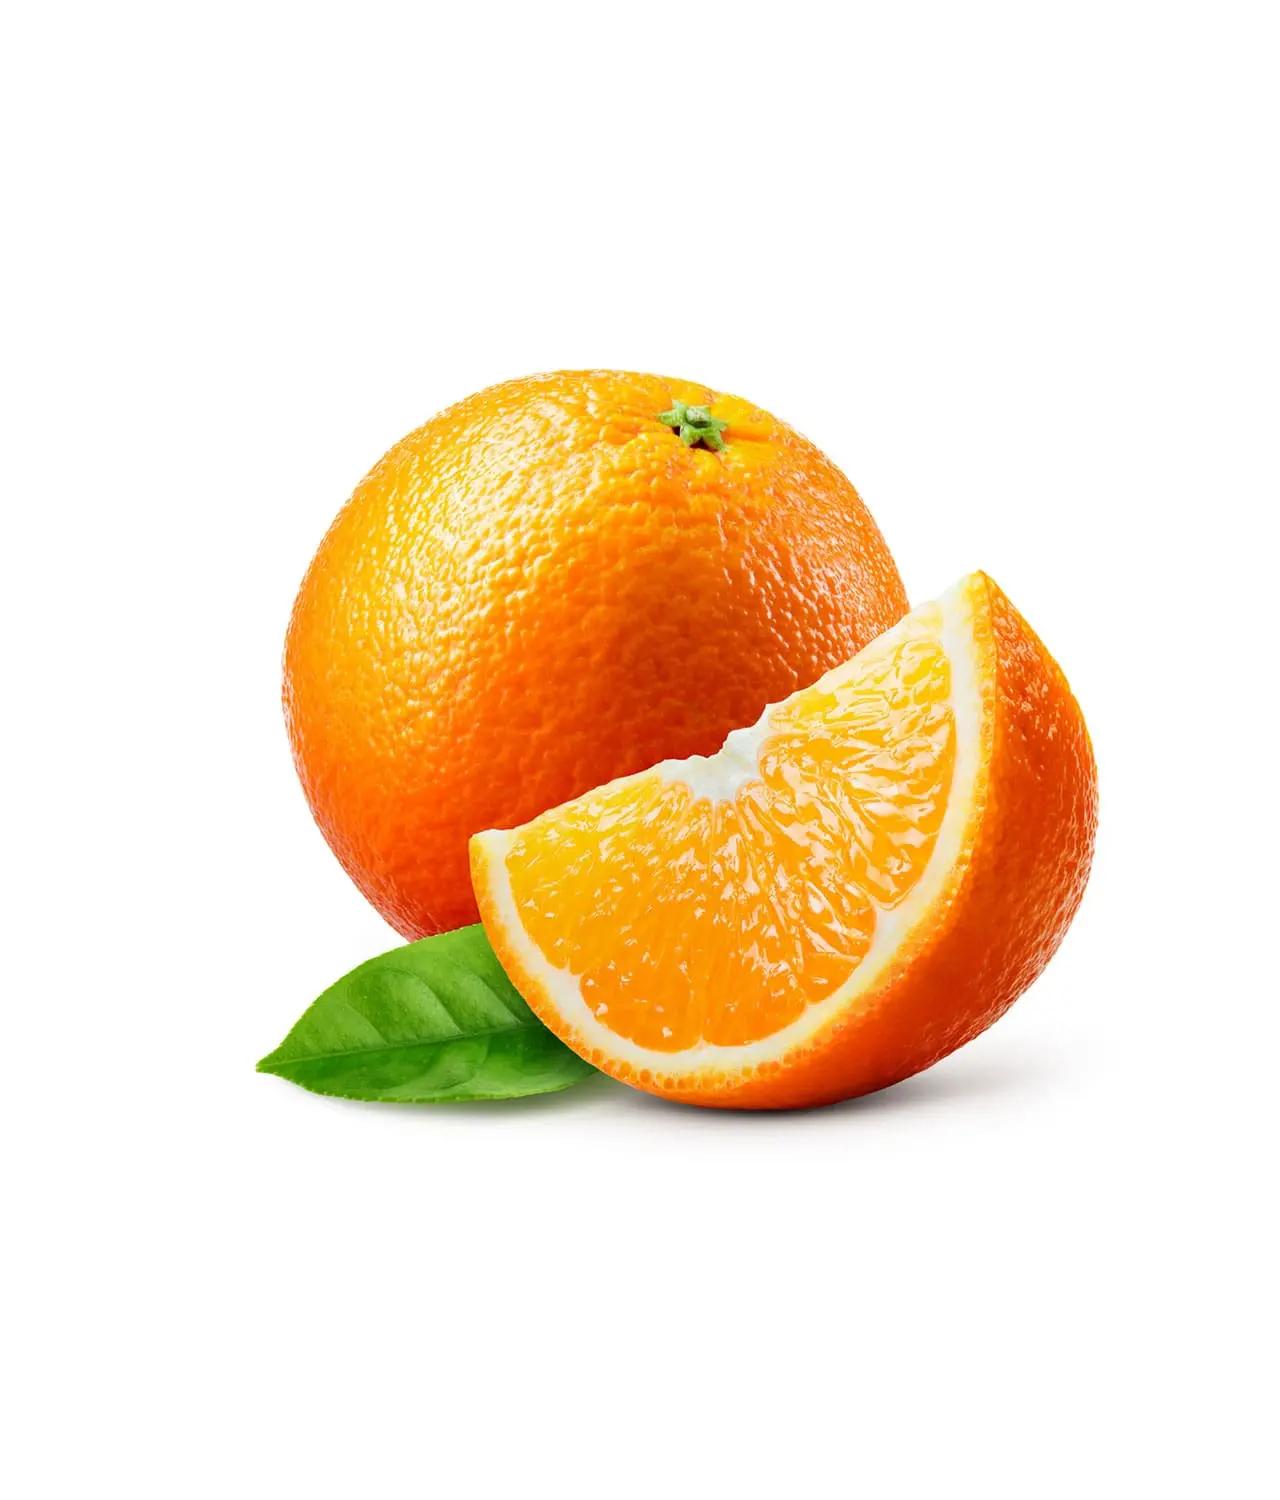 پرتقال تامسون 2